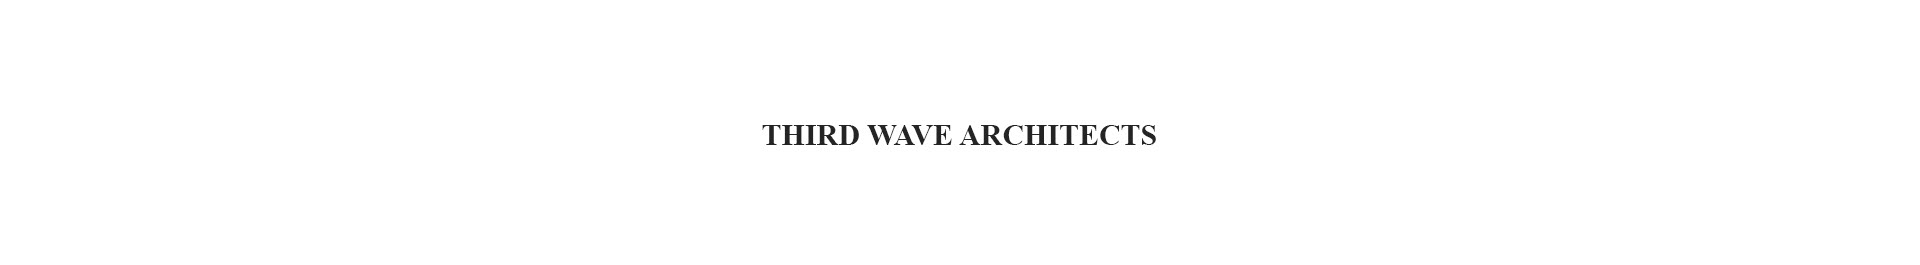 Third Wave Architectss profilbanner